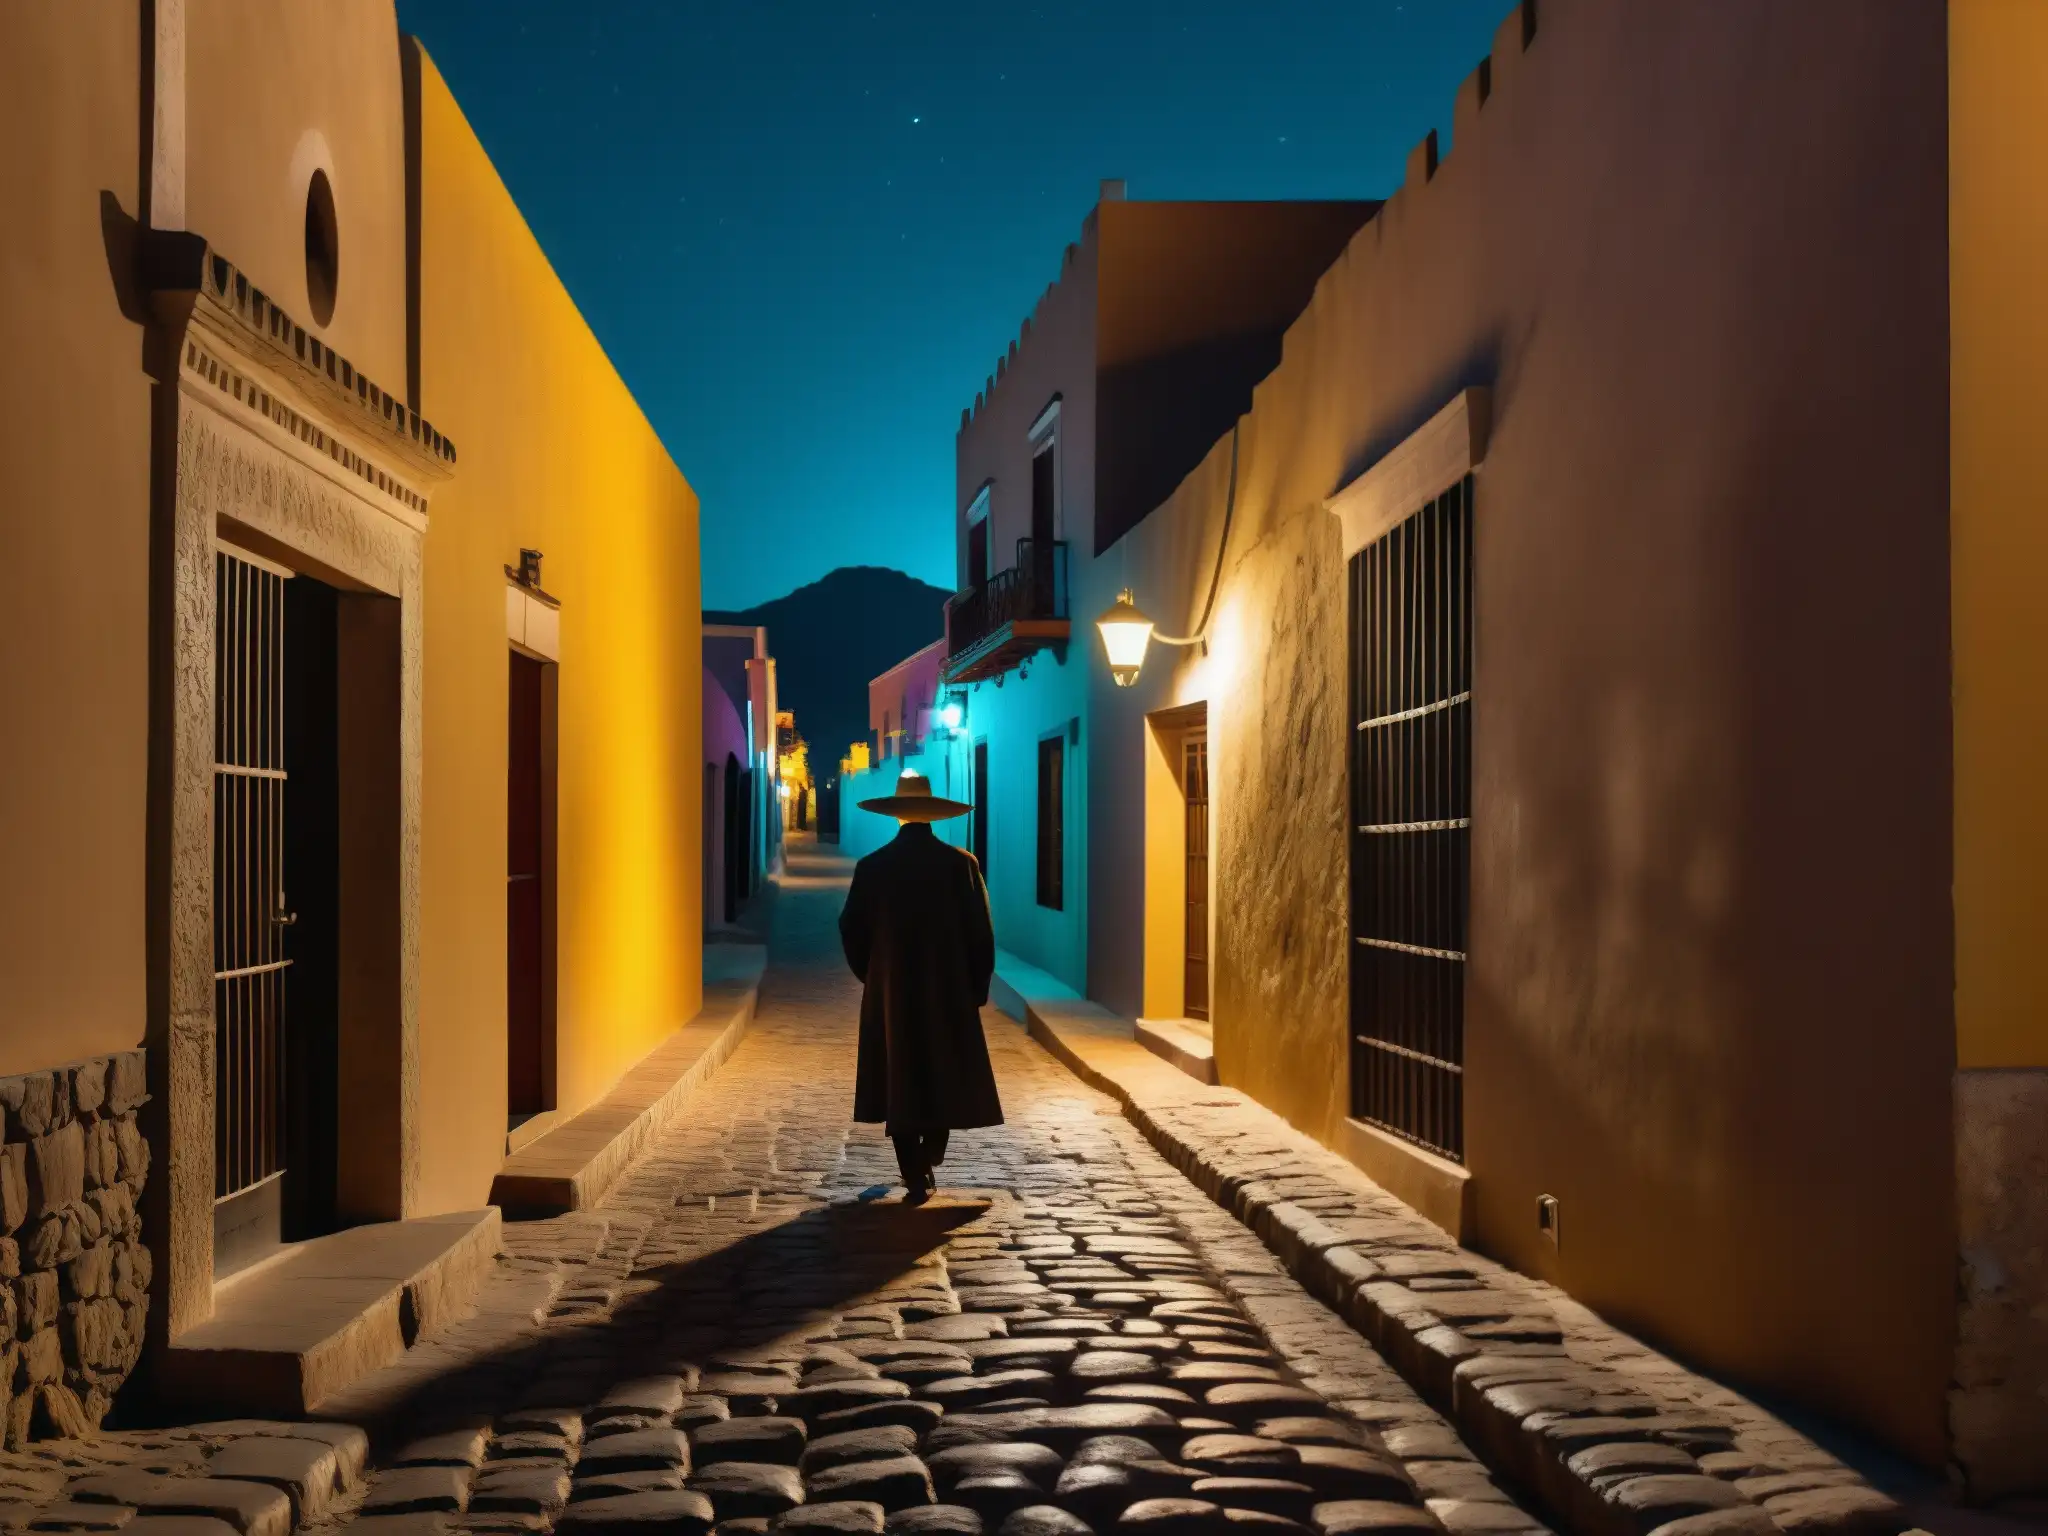 Un callejón oscuro en México de noche, con El Cadejo protegiendo a un viajero solitario